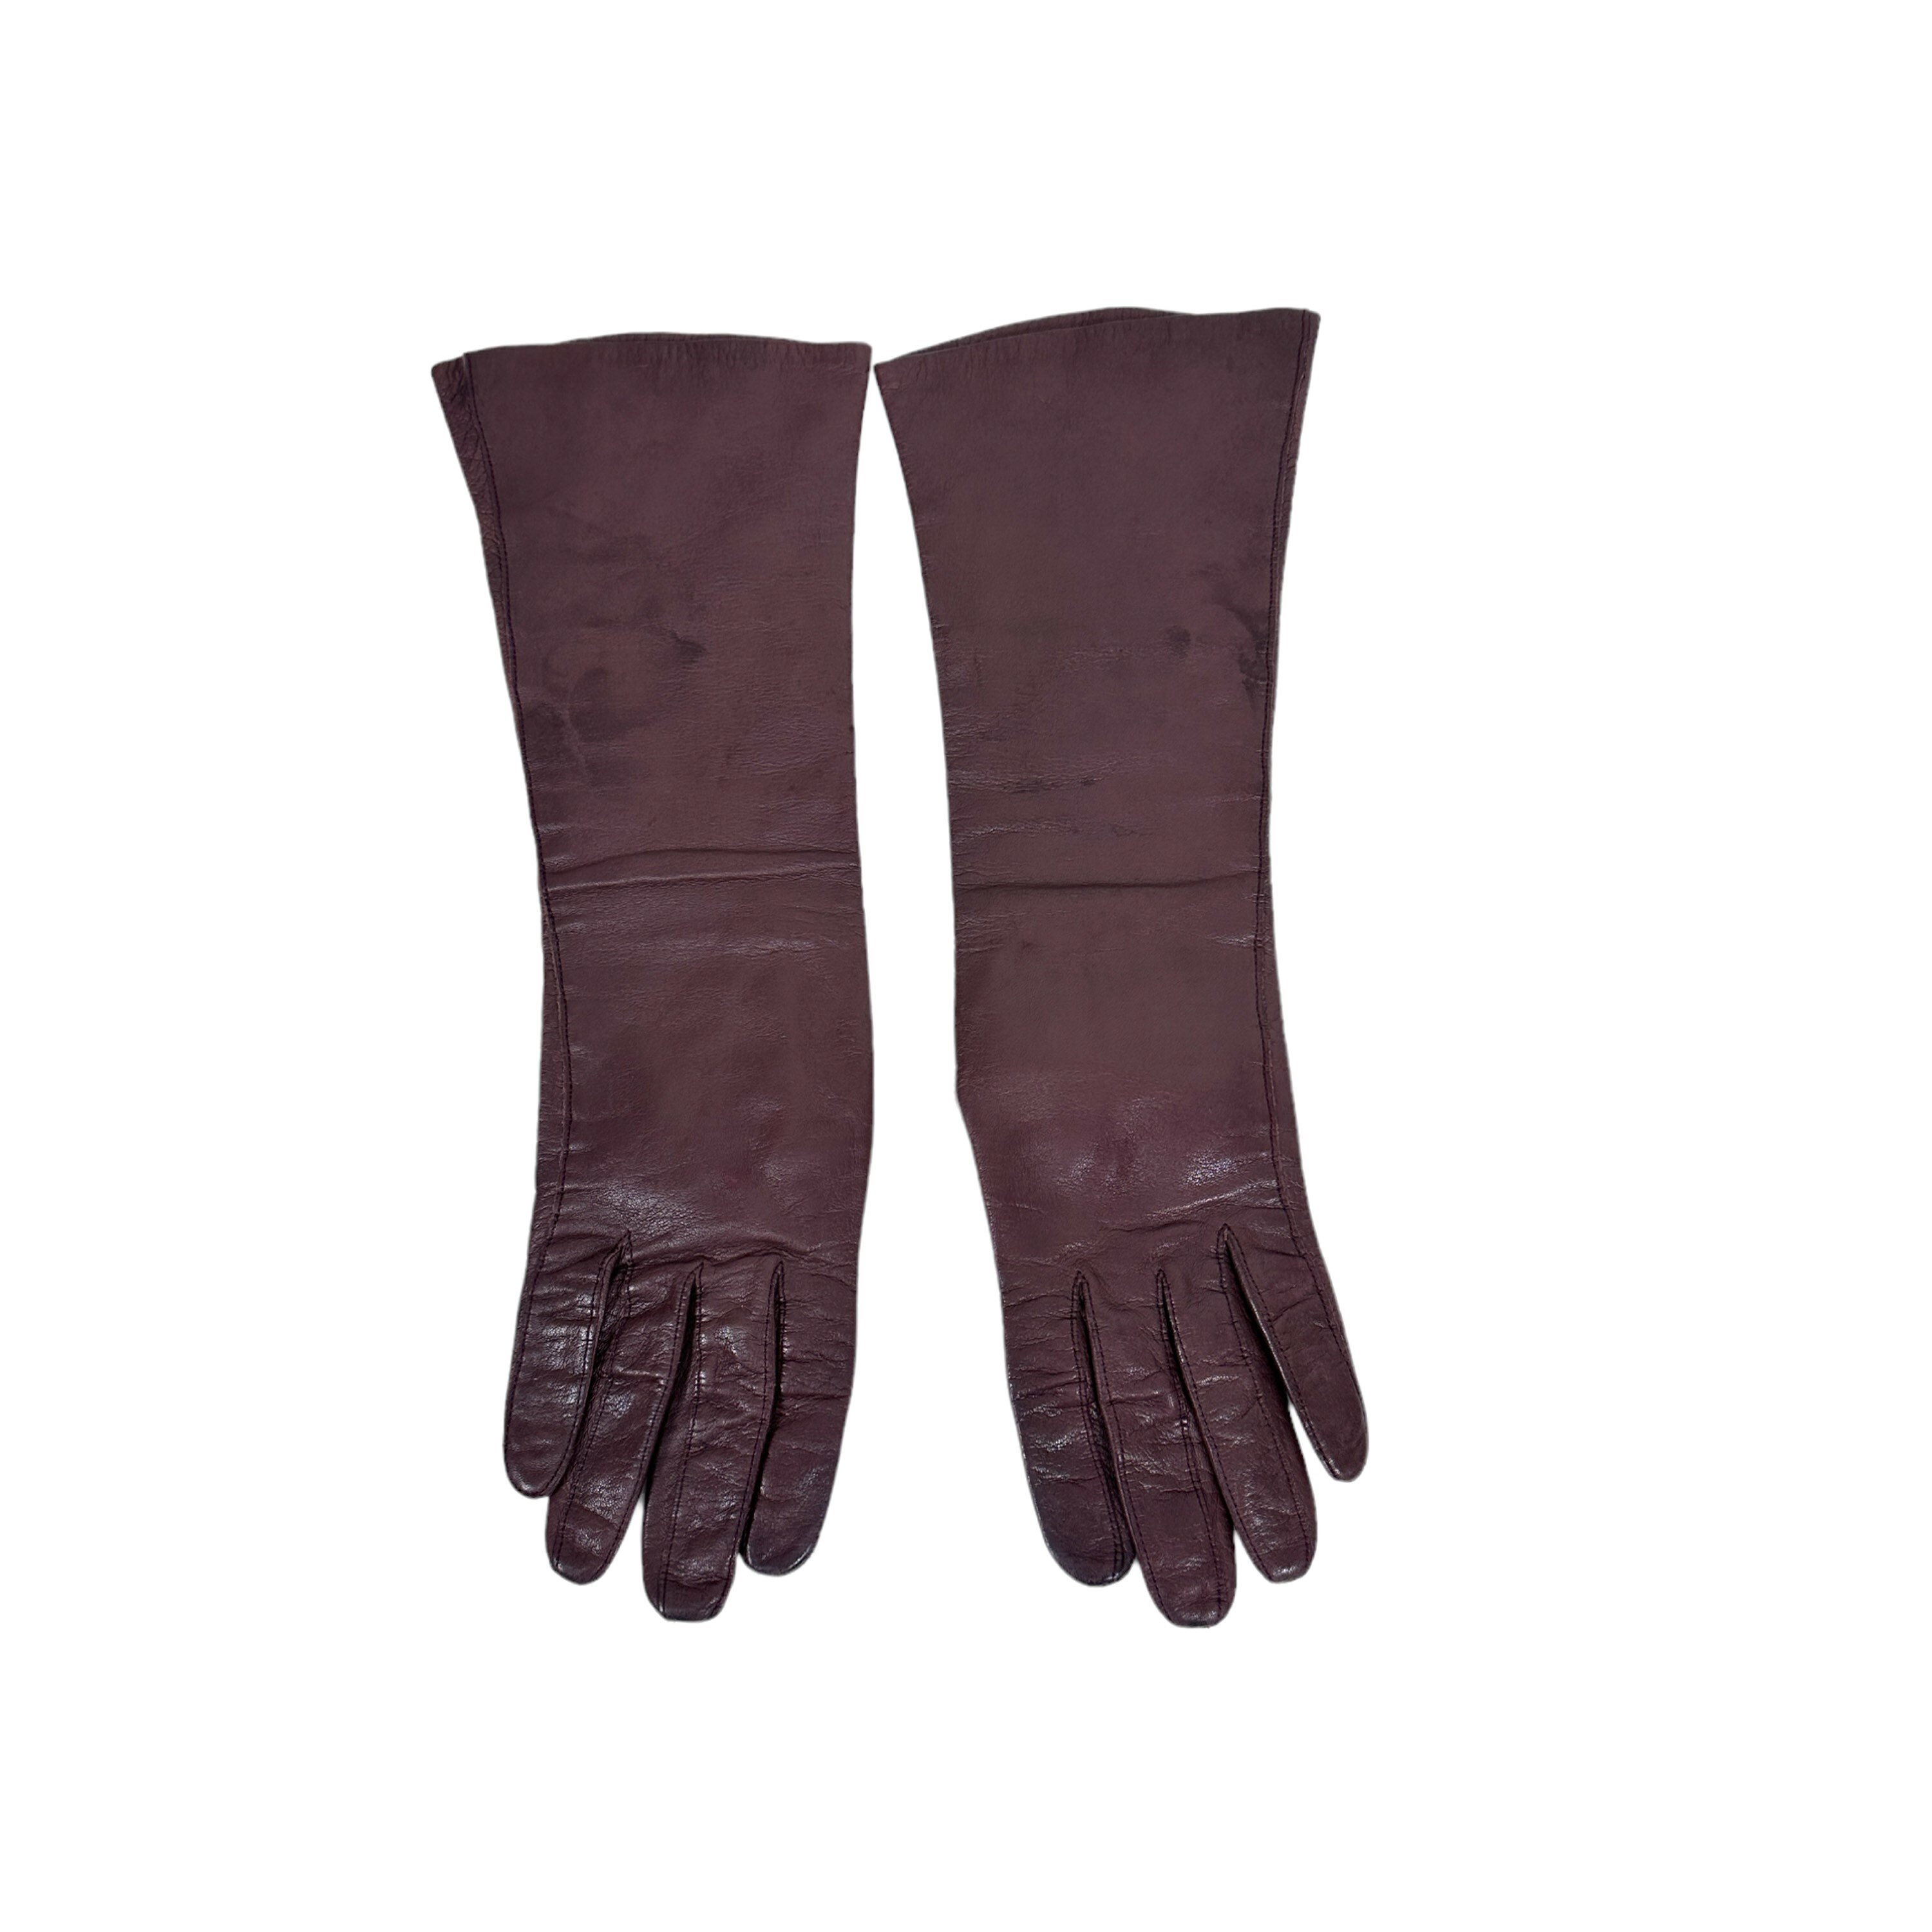 Accessories Gloves & Mittens Winter Gloves Men Leather Gloves HSMI2016 